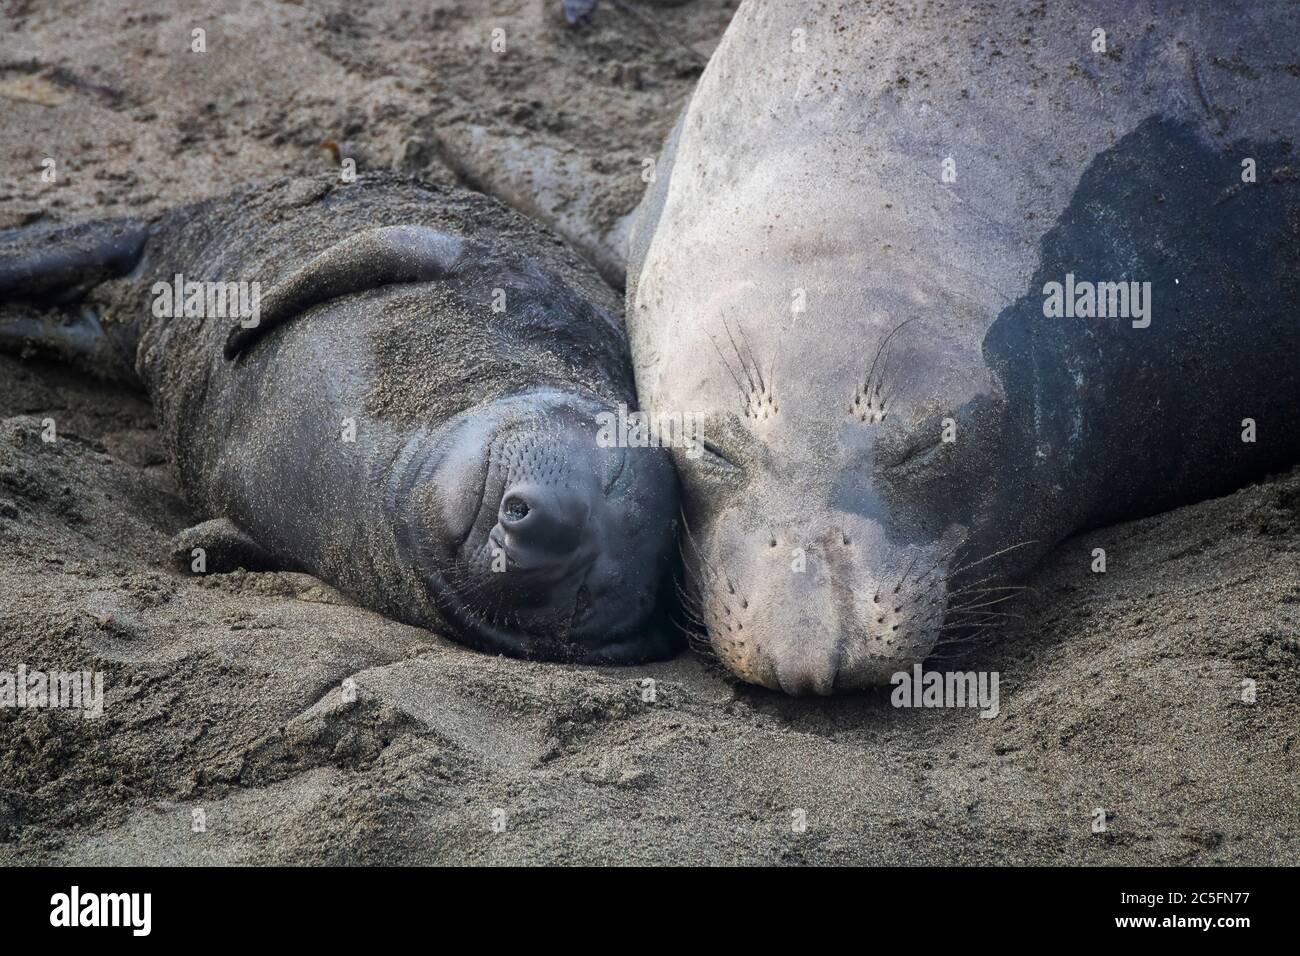 Momento prezioso con madre e cucito elefante foca settentrionale addormentato con teste insieme sulla spiaggia in California. Foto Stock